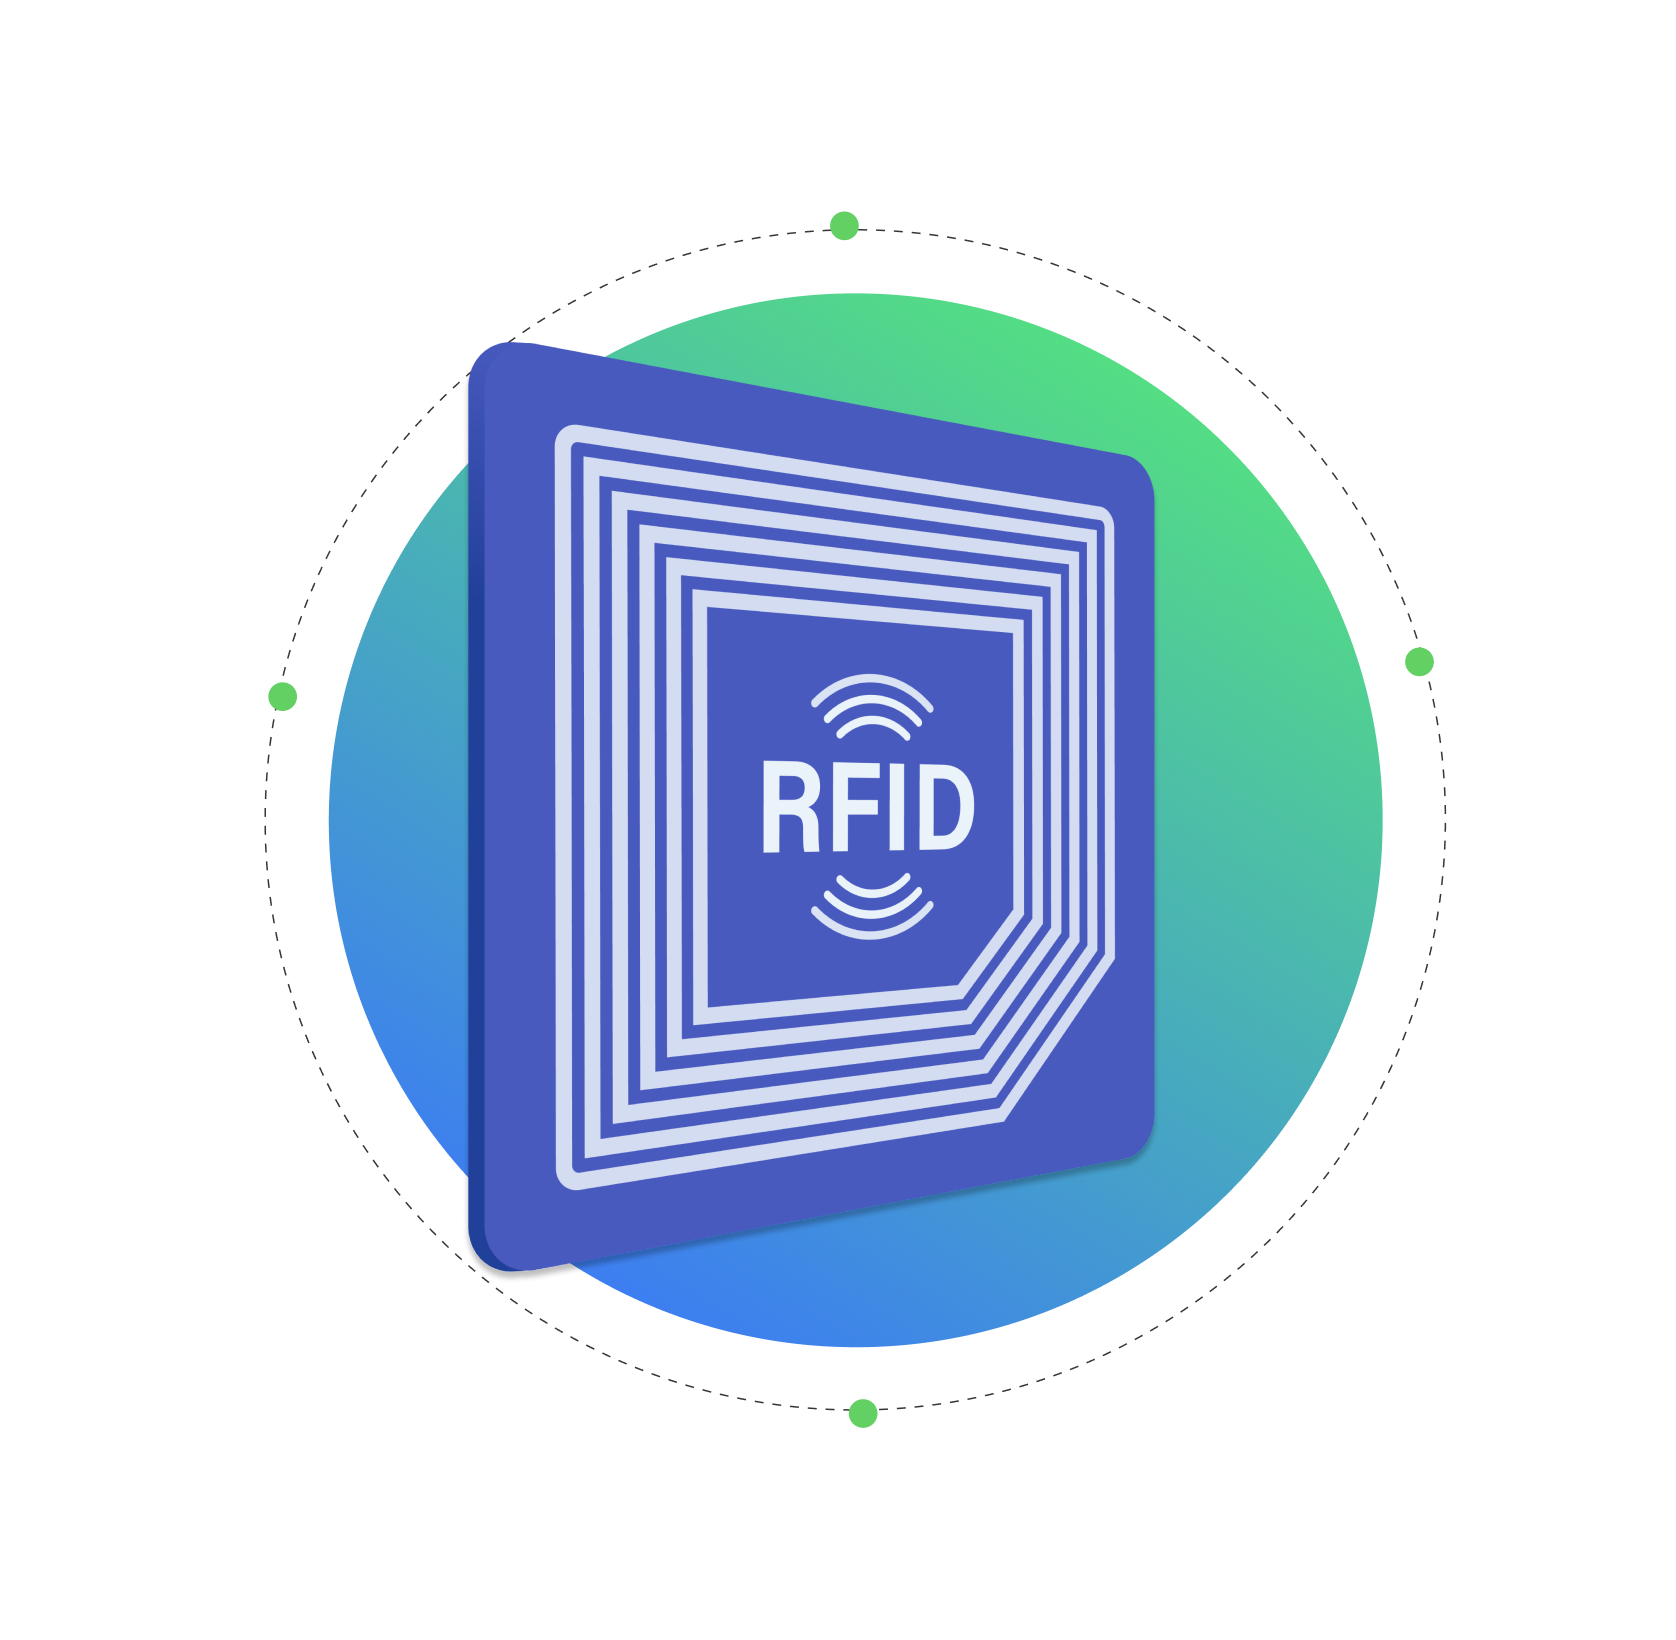 Etiqueta azul RFID con fondo en circulo verde